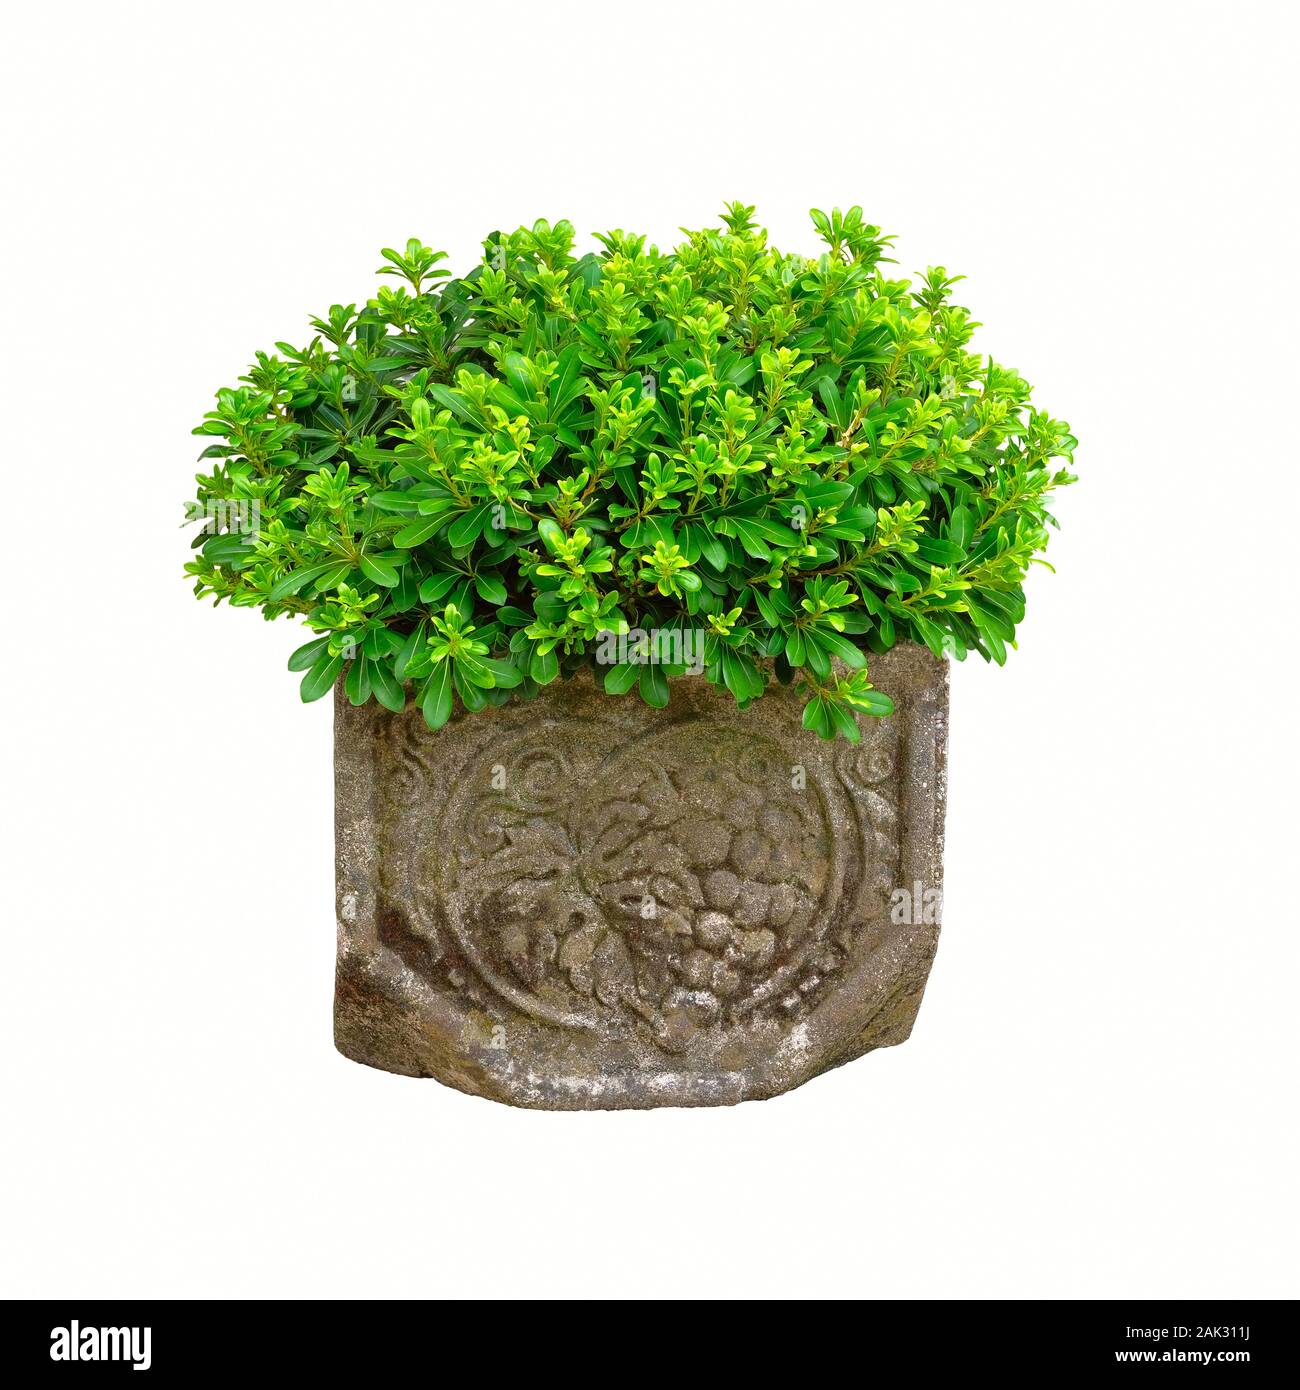 Pot avec plante verte de Bush pour la conception paysagère, isolé sur fond blanc. Plante en pot avec des feuilles juteuses. Récipient jardiner. Banque D'Images